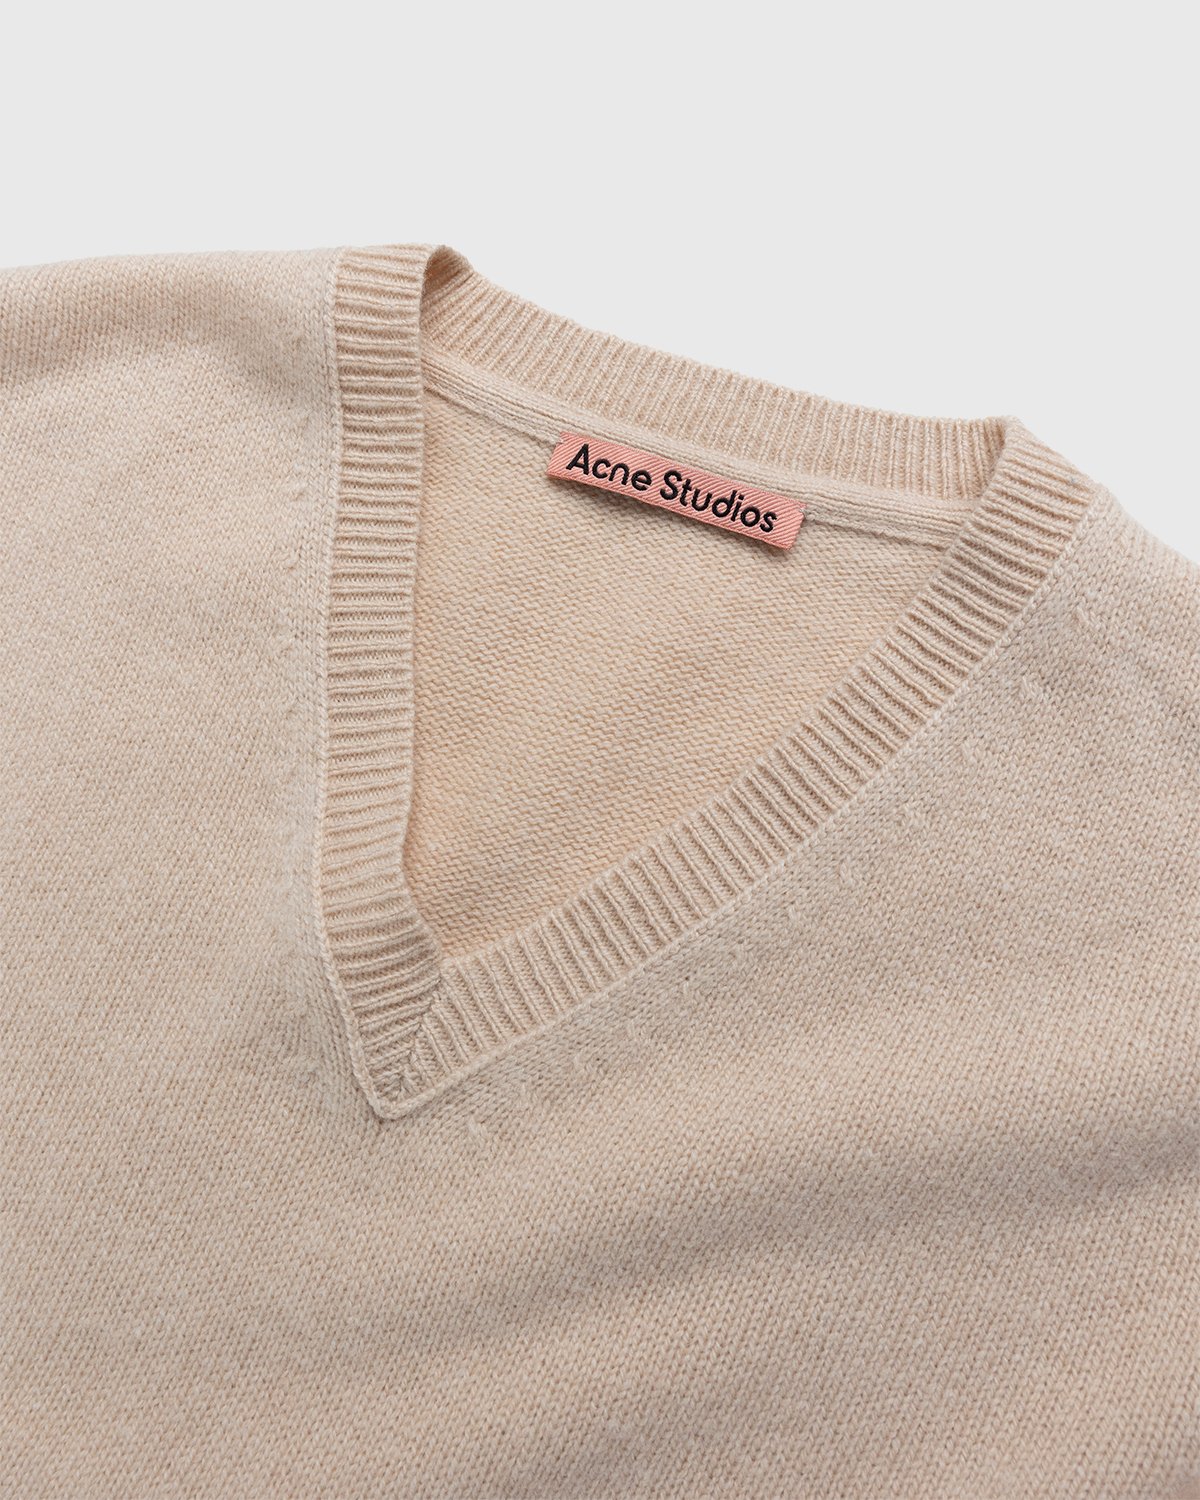 Acne Studios - Cashmere Blend V-Neck Sweater Biscuit Beige - Clothing - Beige - Image 3